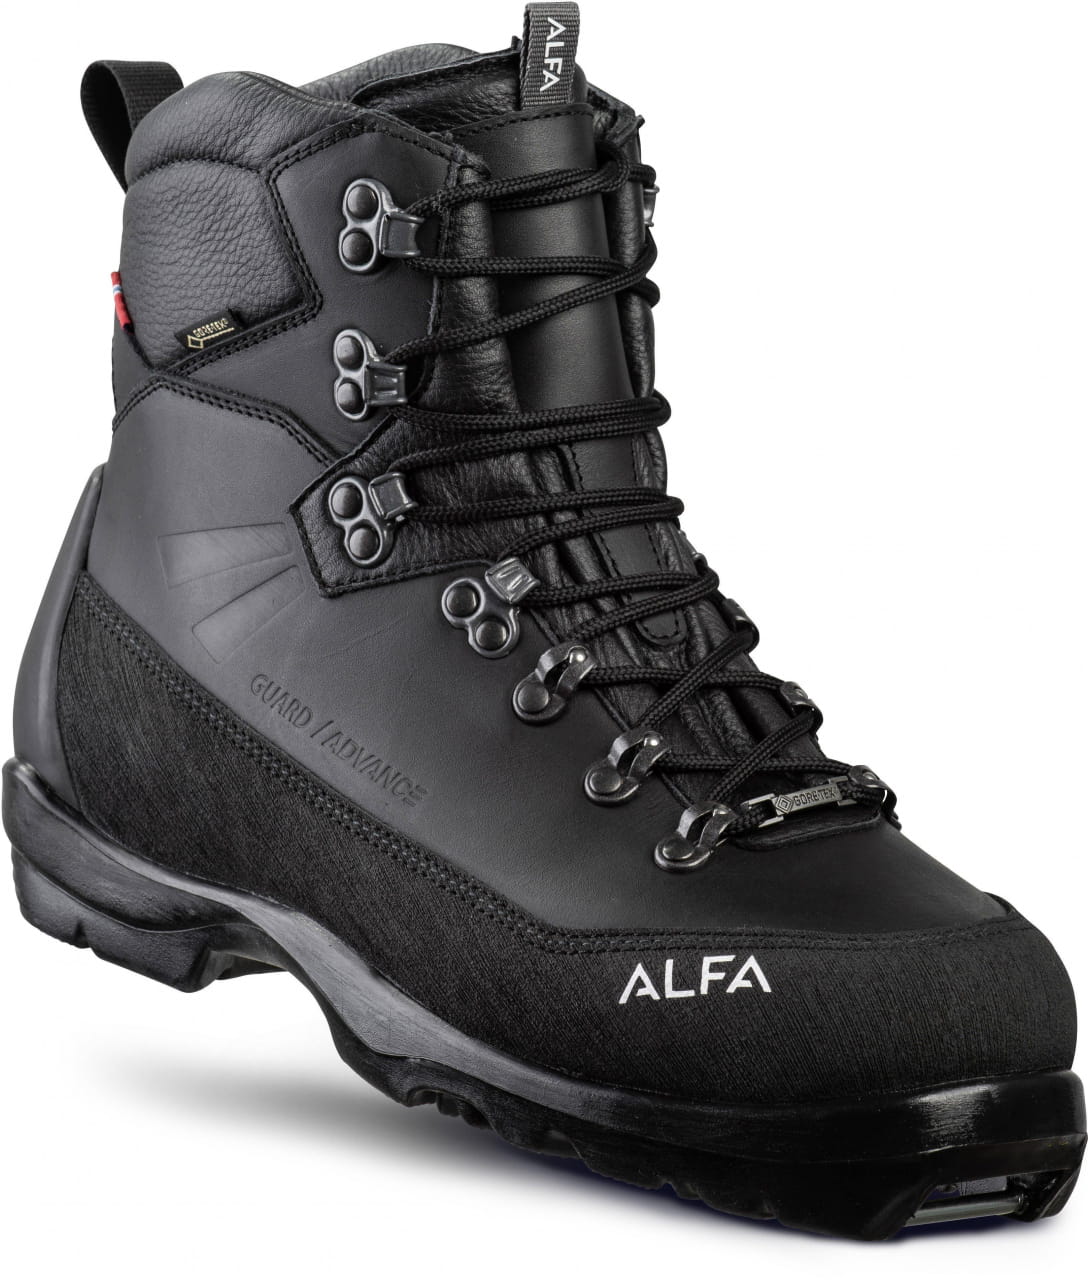 Calzado de esquí de fondo para hombre Alfa Guard Advance GTX M